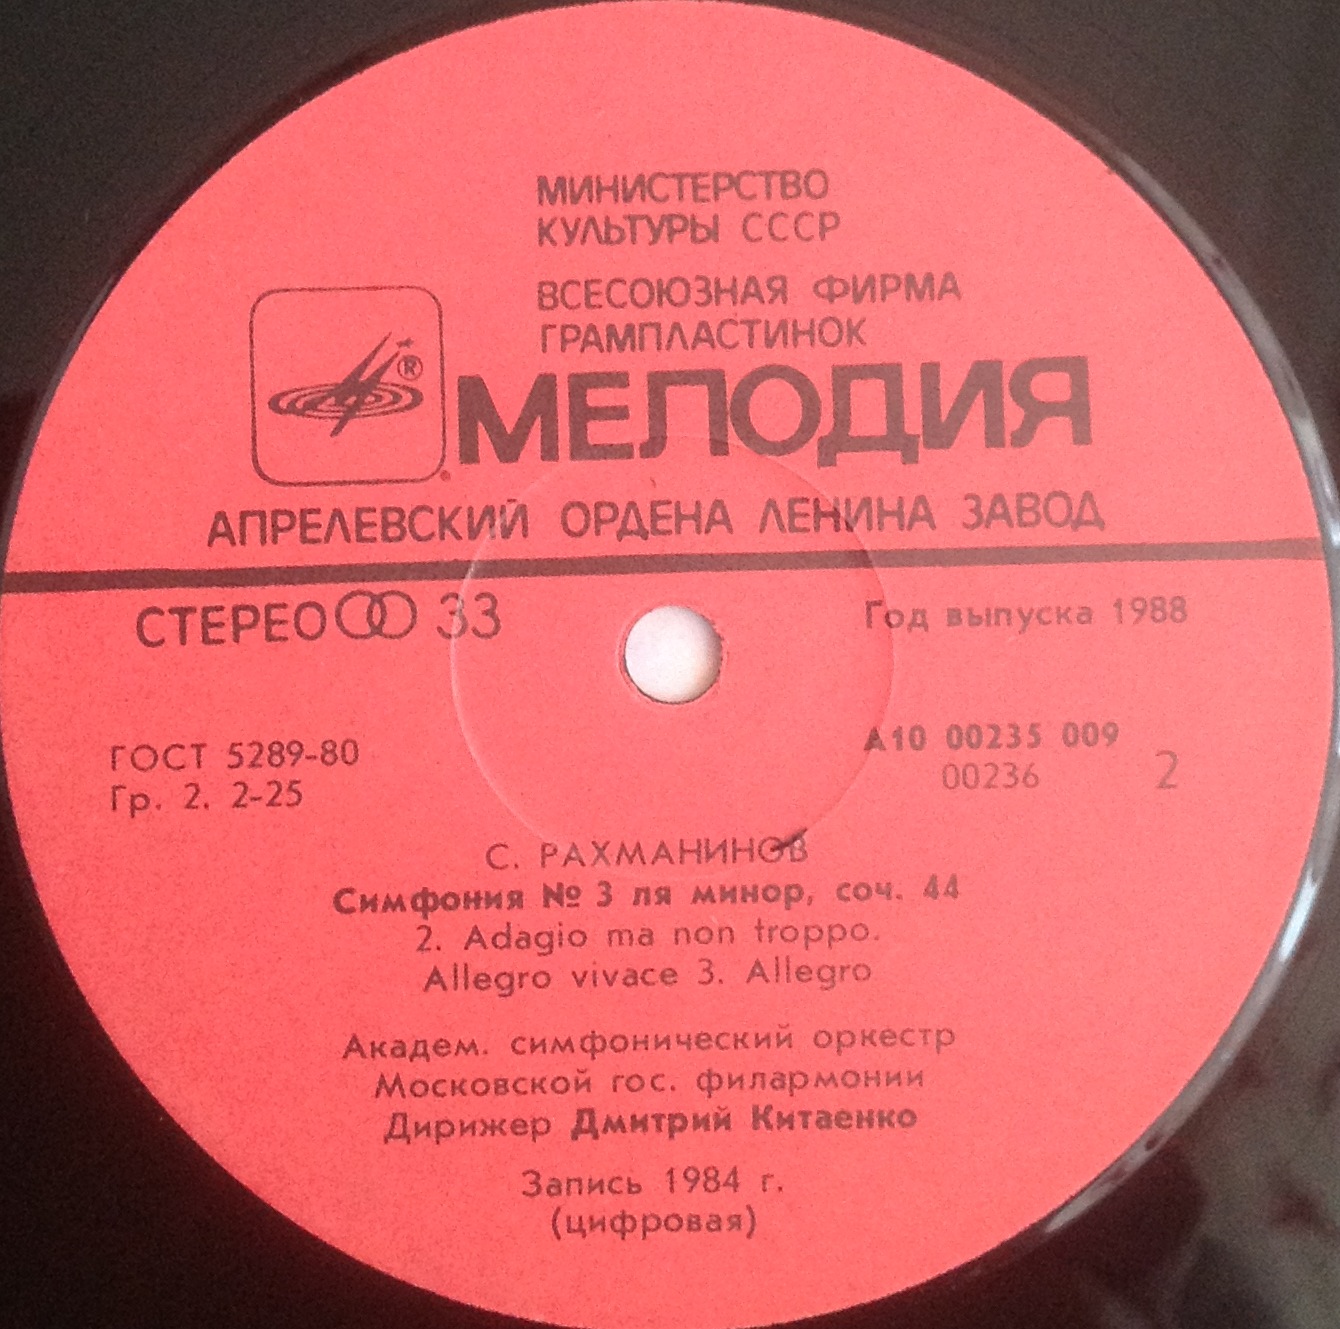 С. РАХМАНИНОВ (1873-1943): Симфония № 3 ля минор, соч. 44.